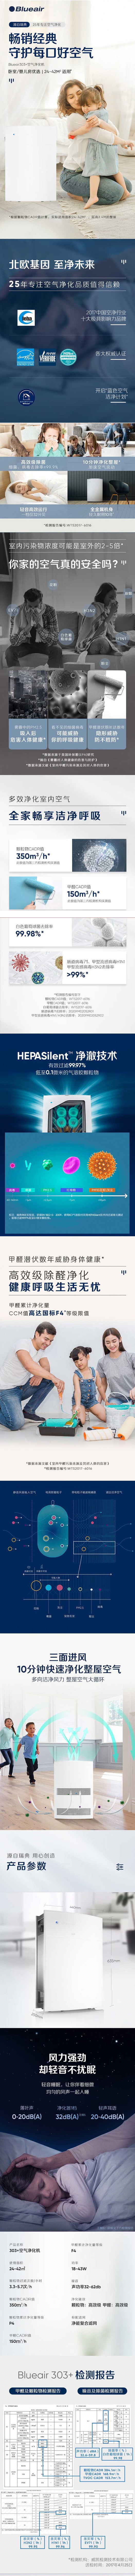 重庆空气净化器租赁公司